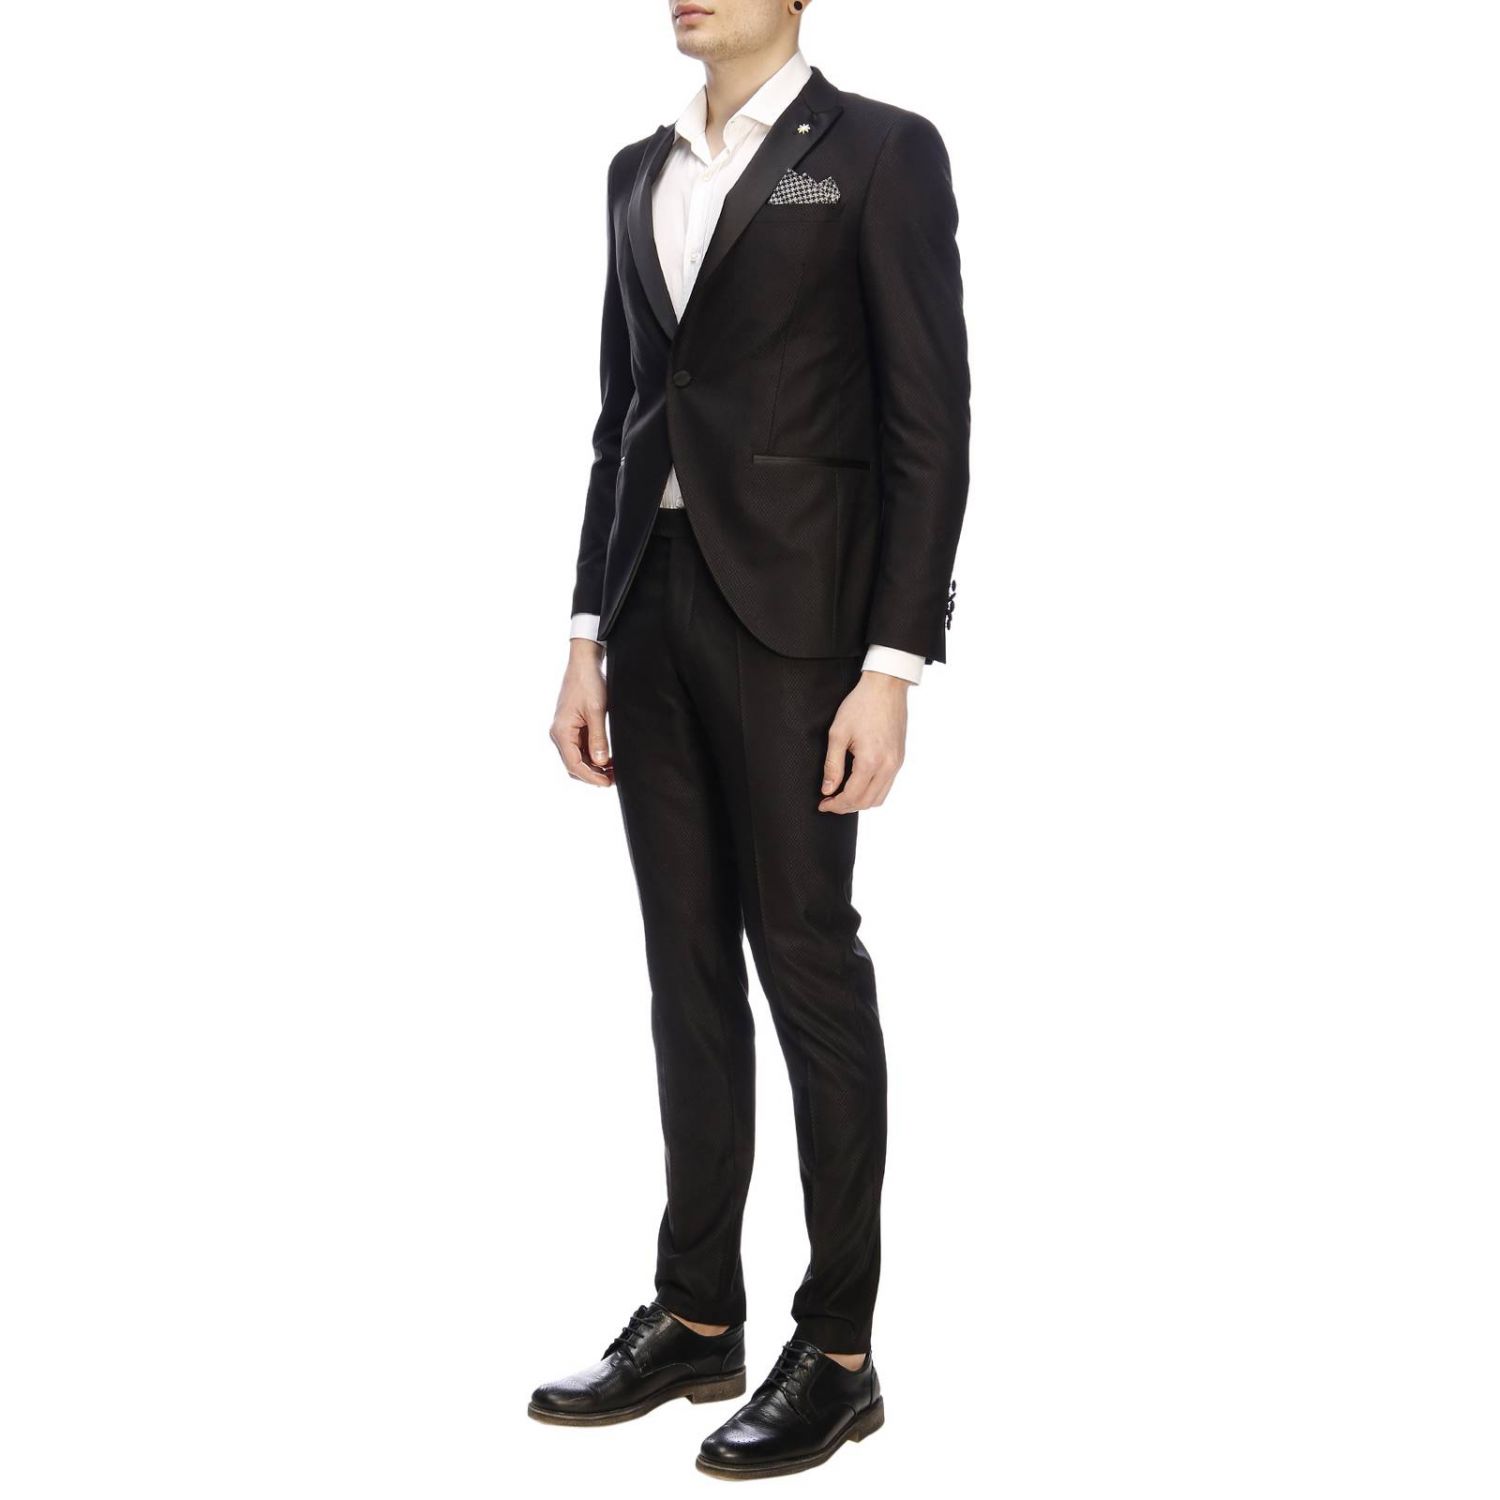 Manuel Ritz Outlet: Suit men | Suit Manuel Ritz Men Black | Suit Manuel ...